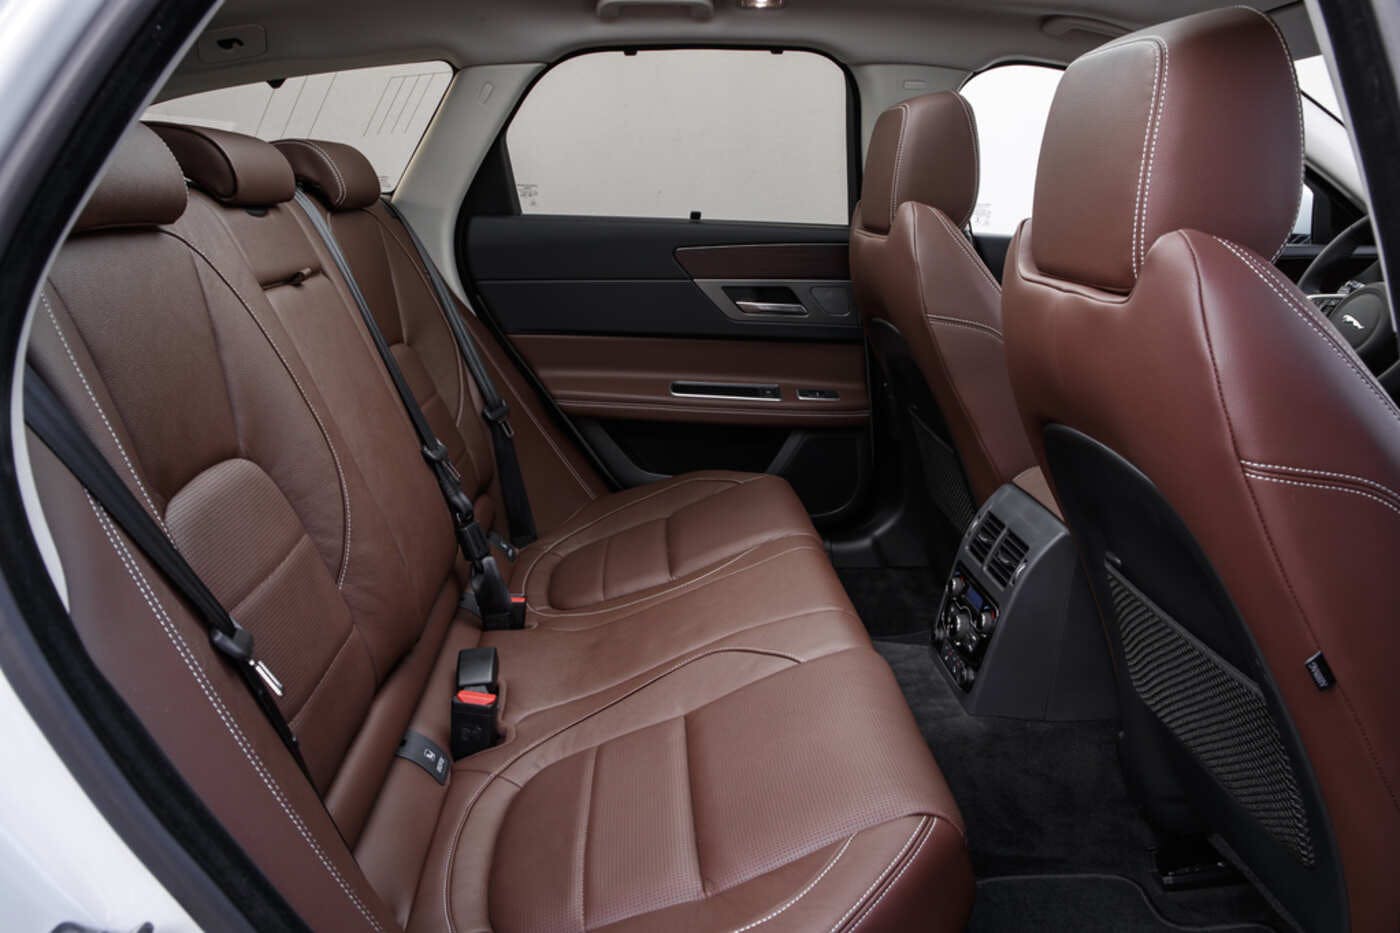 2020 Jaguar Xf Reviews Pricing Pictures Truecar